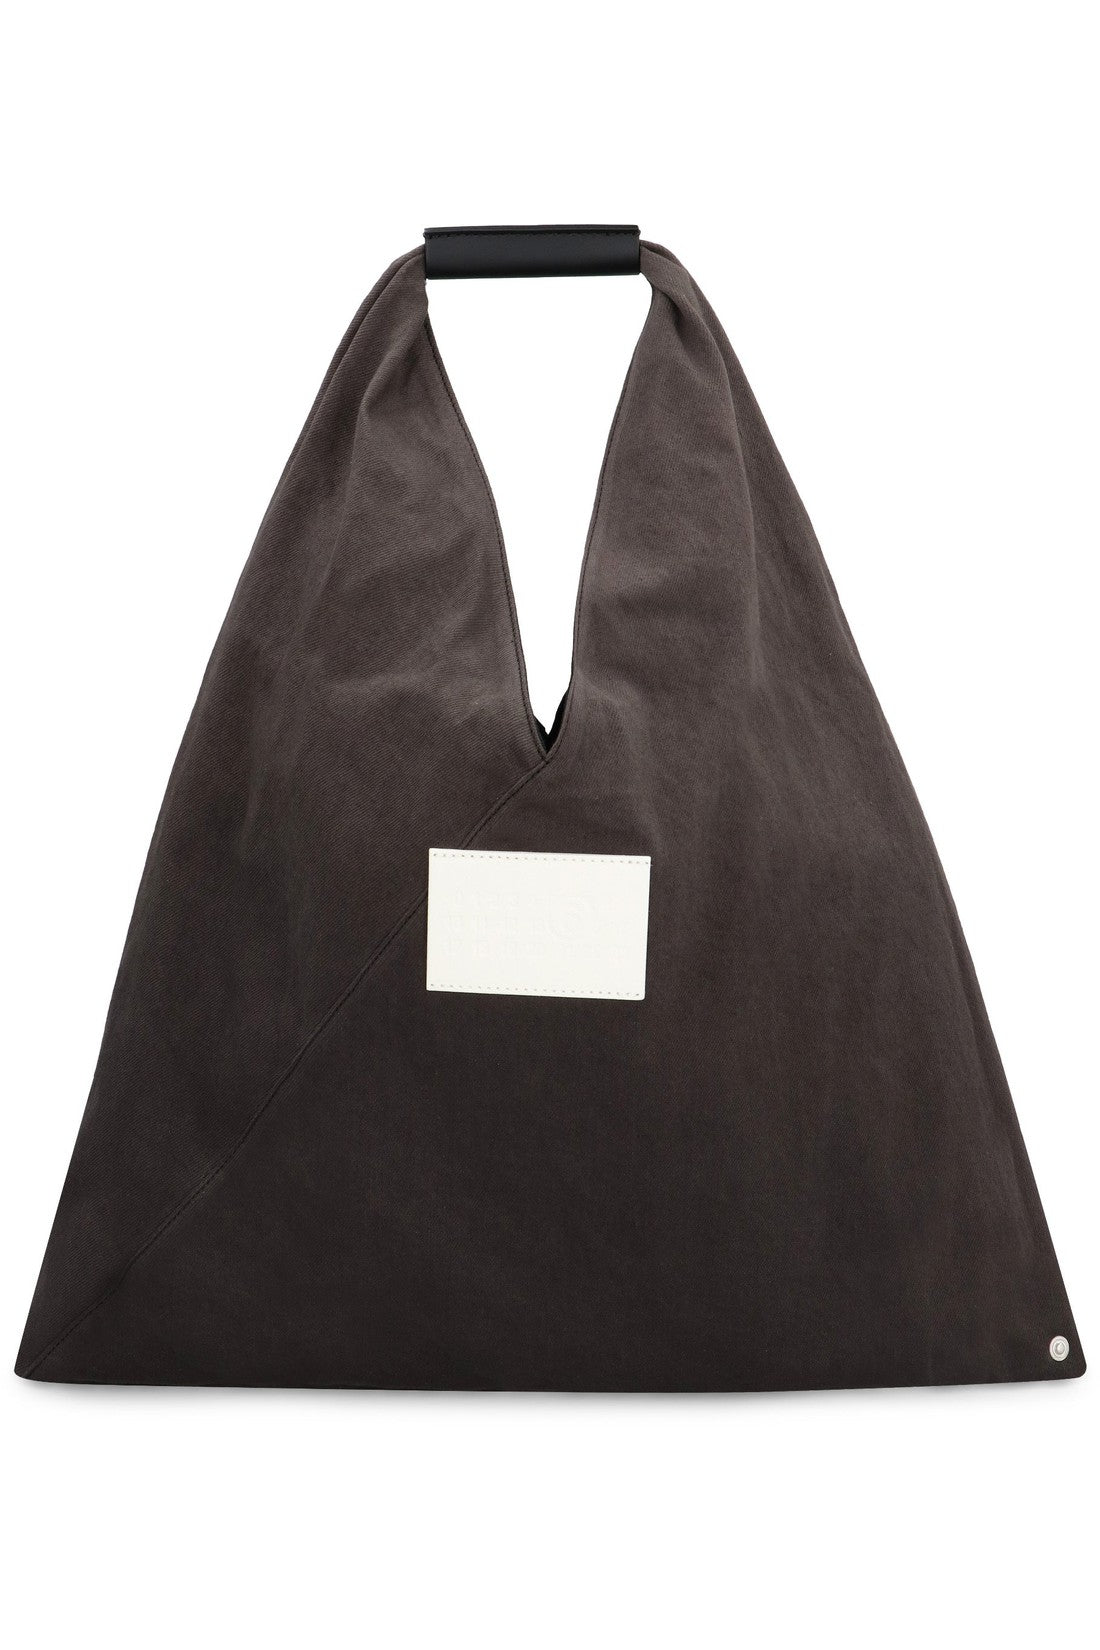 MM6 Maison Margiela-OUTLET-SALE-Japanese handbag-ARCHIVIST